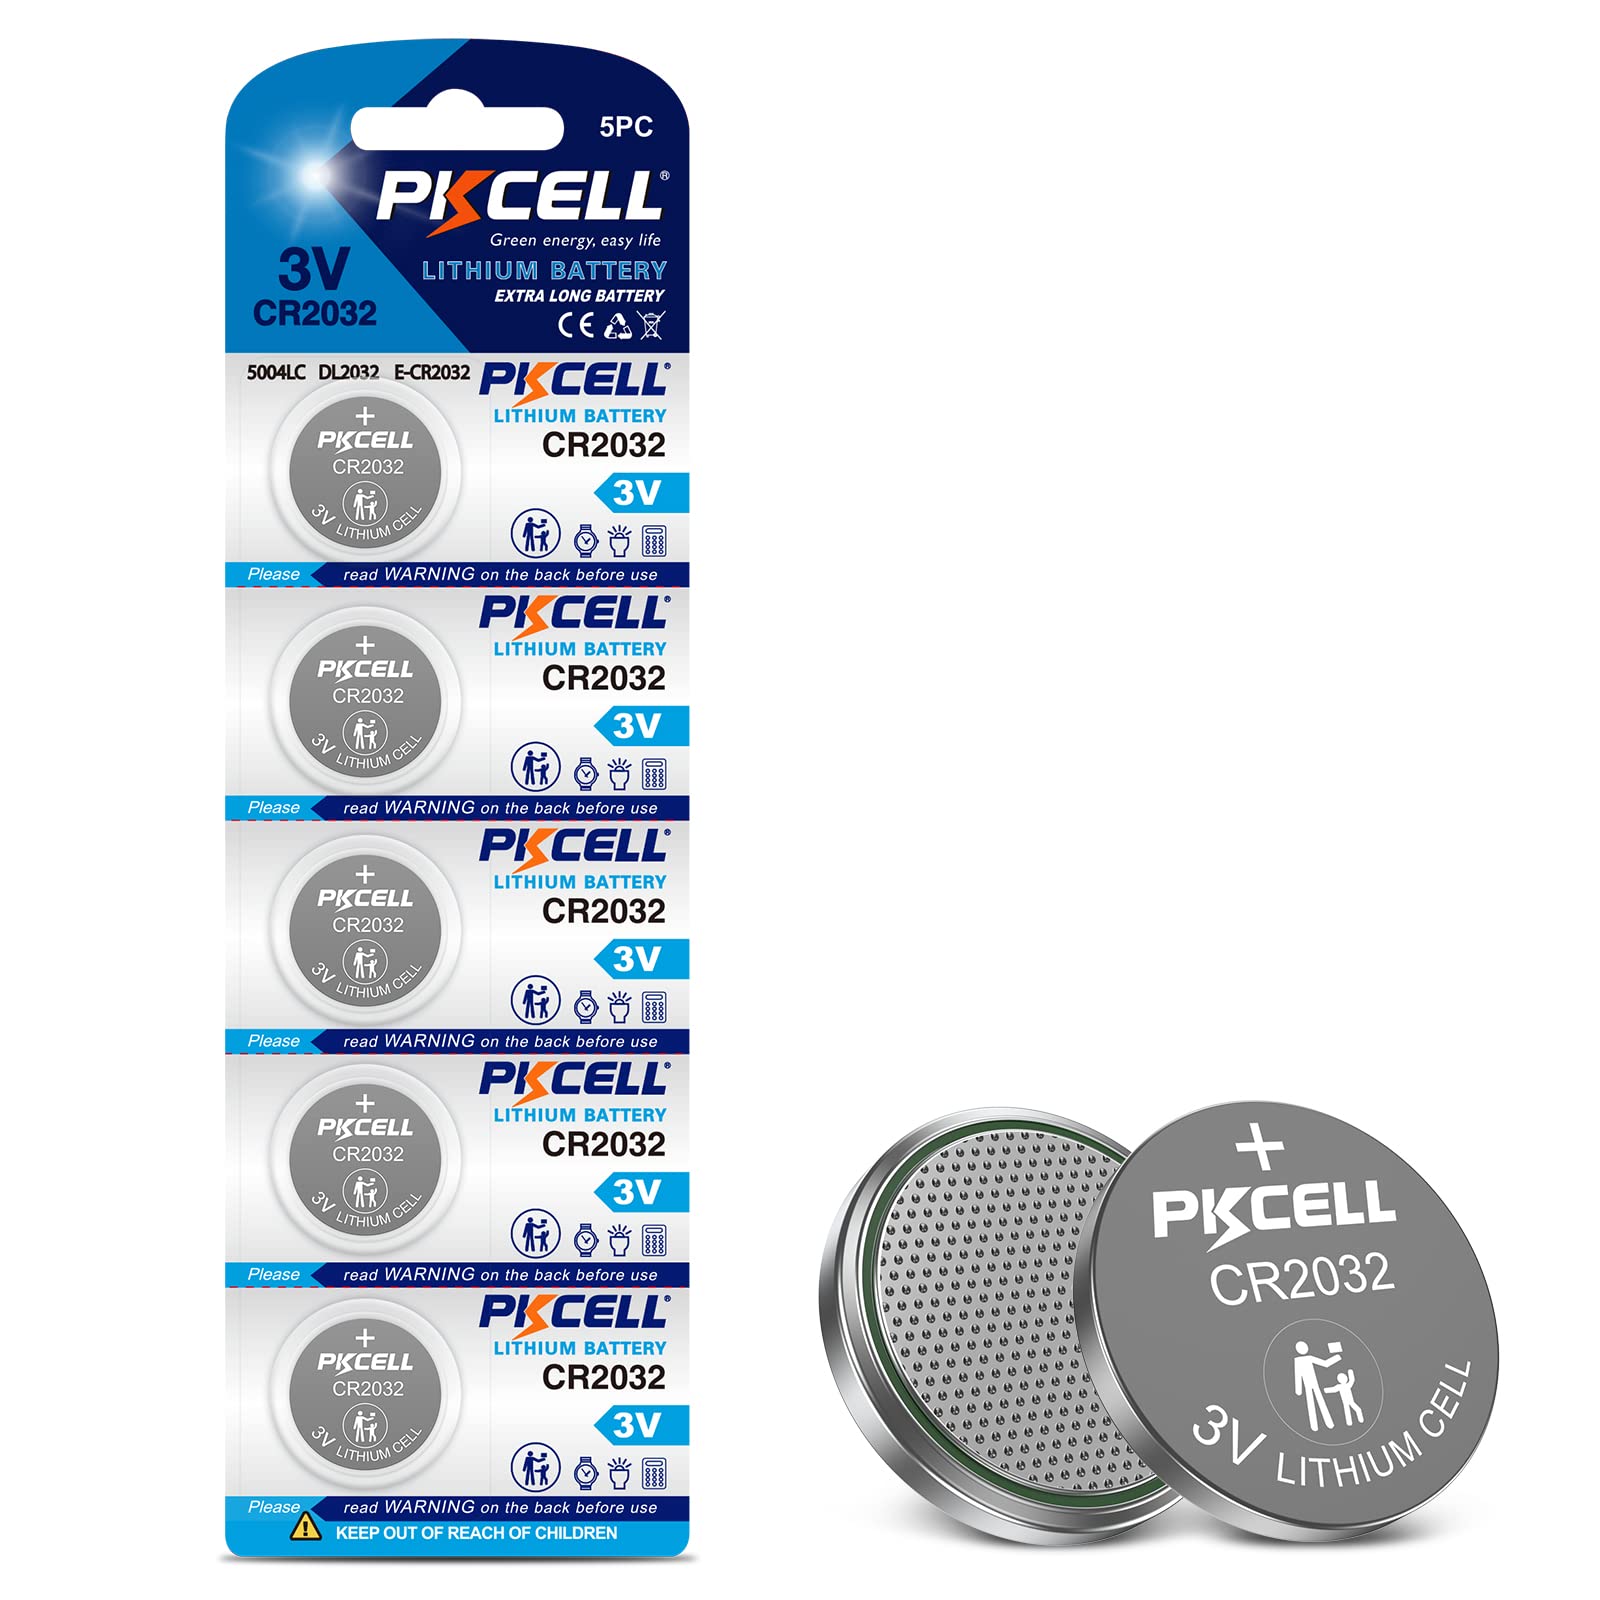 PKCELL CR2032 CR2032 Batteries ECR2032 DL2032 3V Lithium Batteries